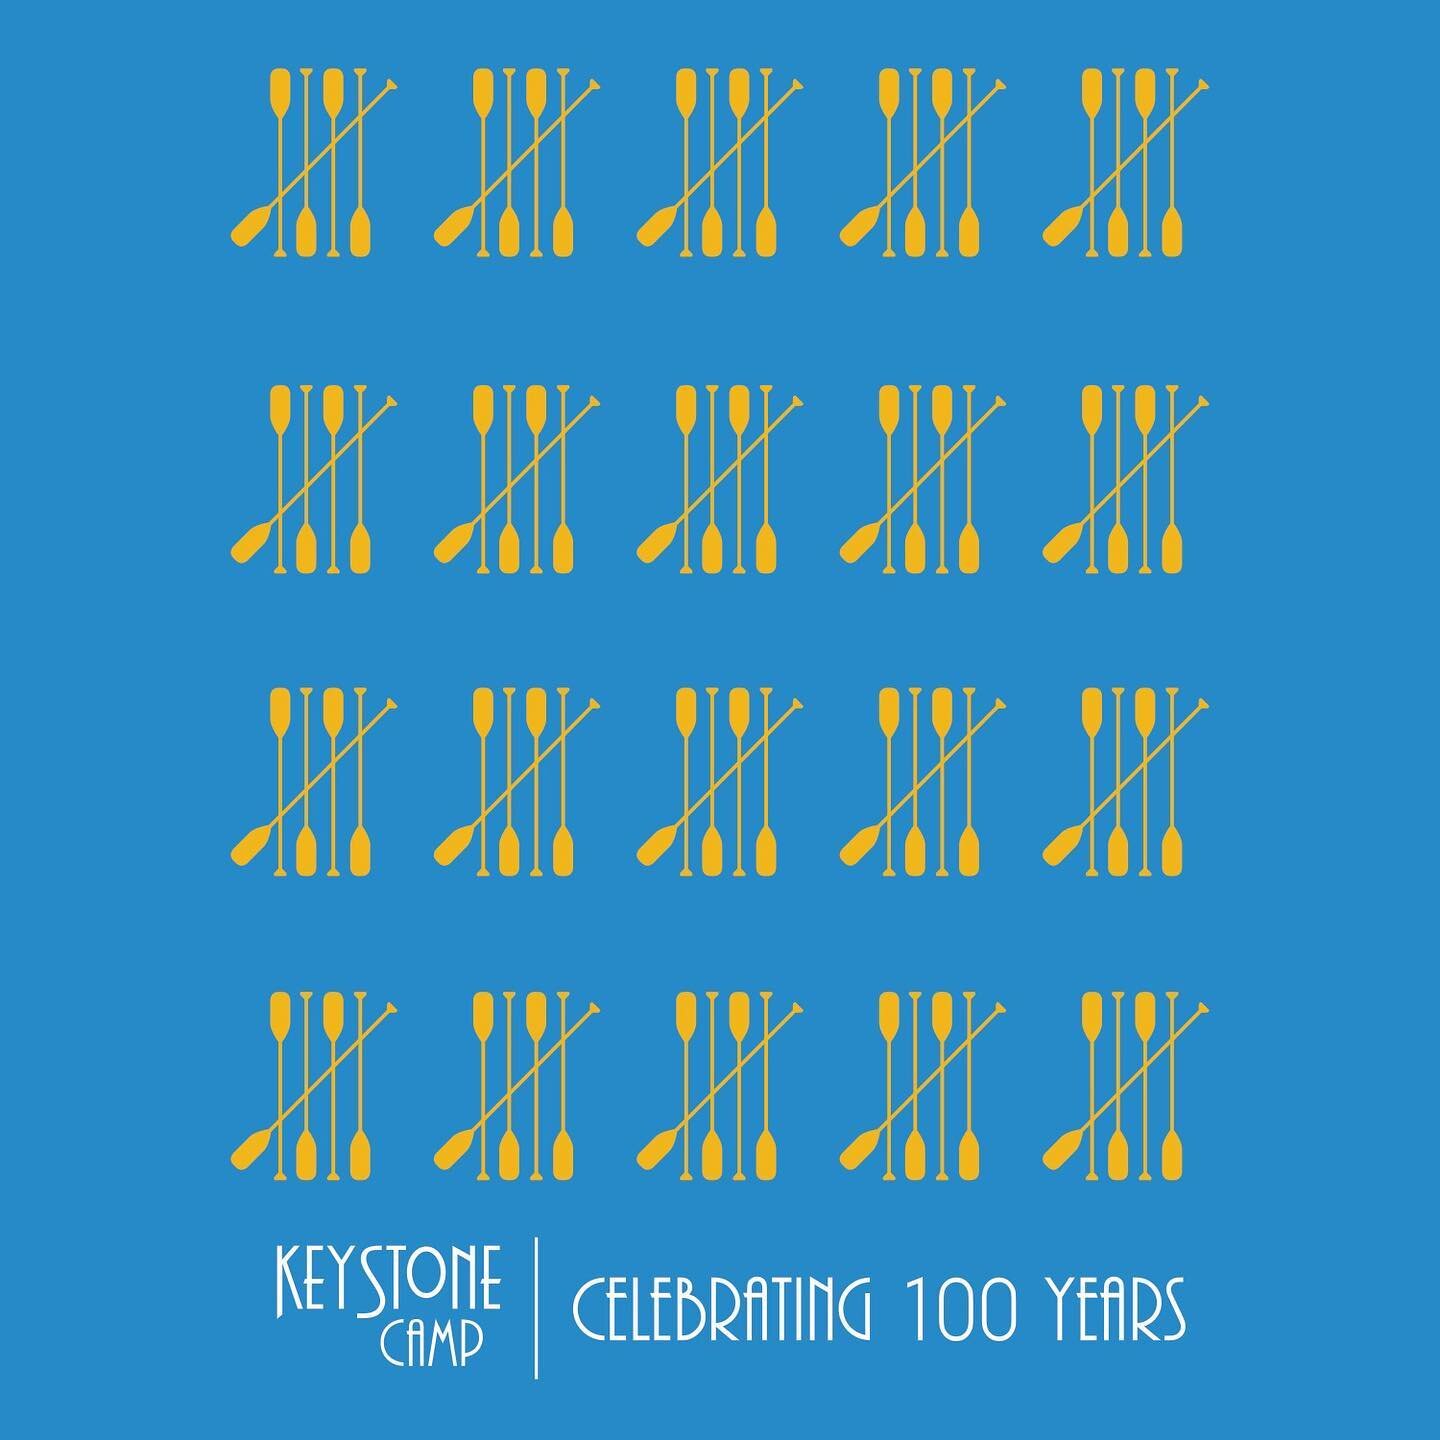 T-shirt design commemorating 100 years of Keystone Camp @keystonecamp #camplogo  #campdesign #keystonecamp #100years #100yearlogo